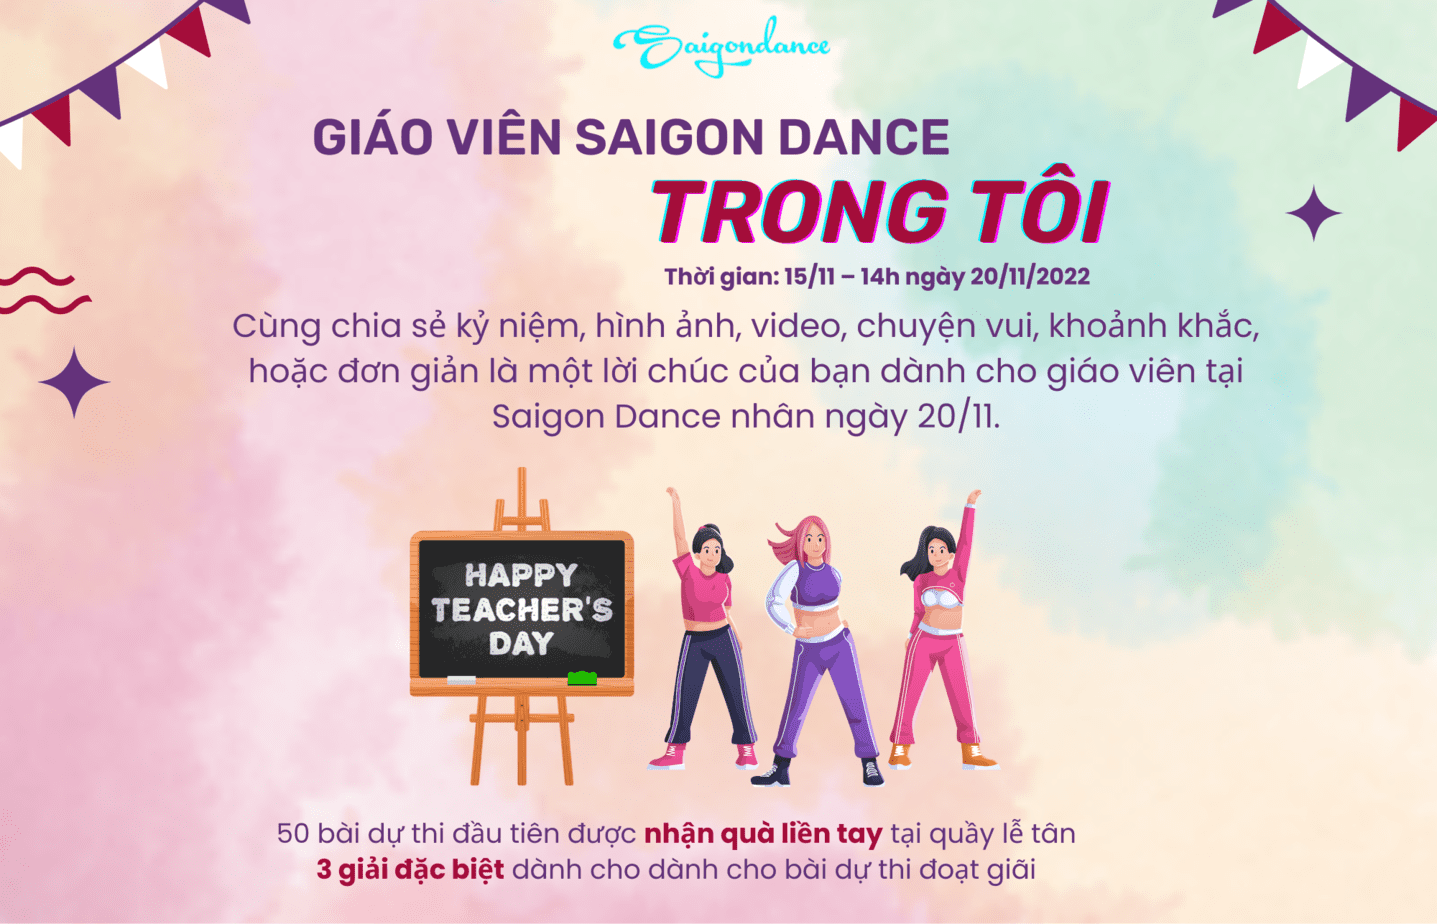 Nhận quà liền tay cùng Cuộc thi "Giáo viên Saigon Dance trong tôi" 4